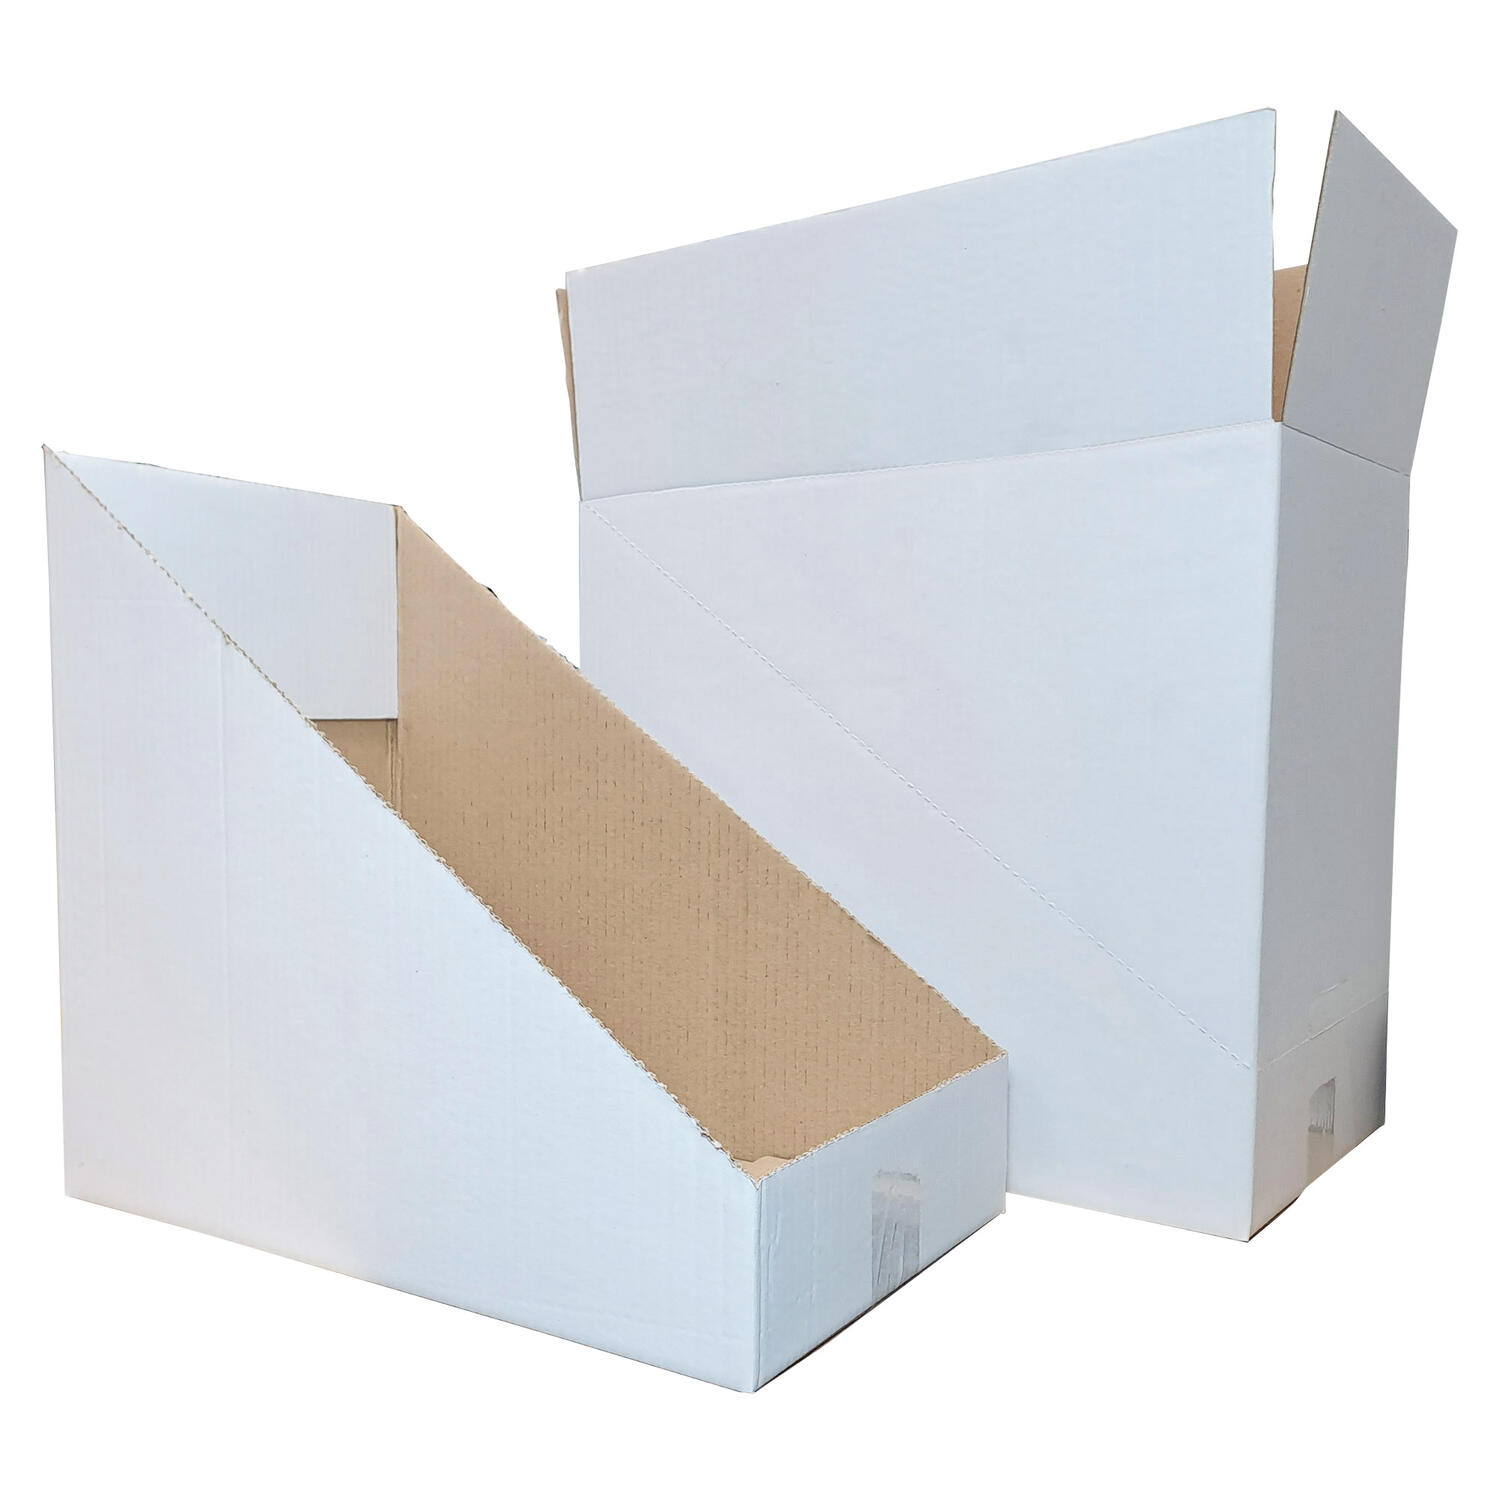 Faltkarton Regalkarton Lagerkarton perforiert 400x260x370mm (Außenmaß) 1-wellig weiß